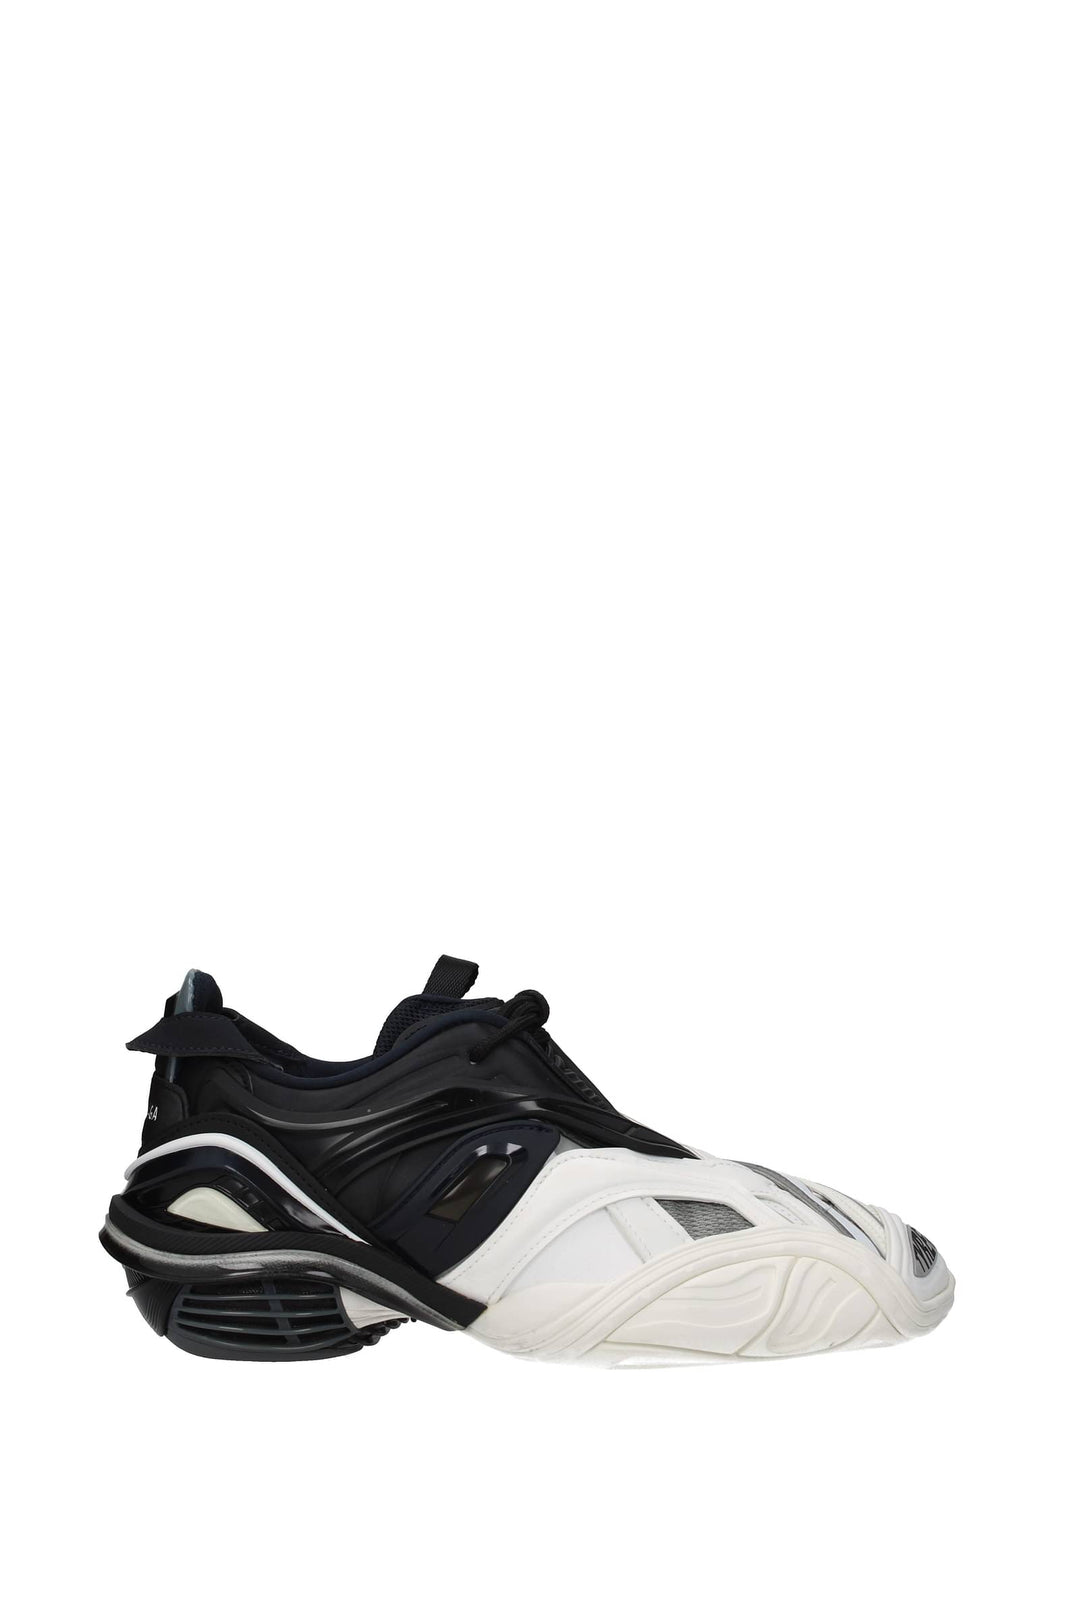 Sneakers Tyrex Tessuto Bianco Nero - Balenciaga - Donna